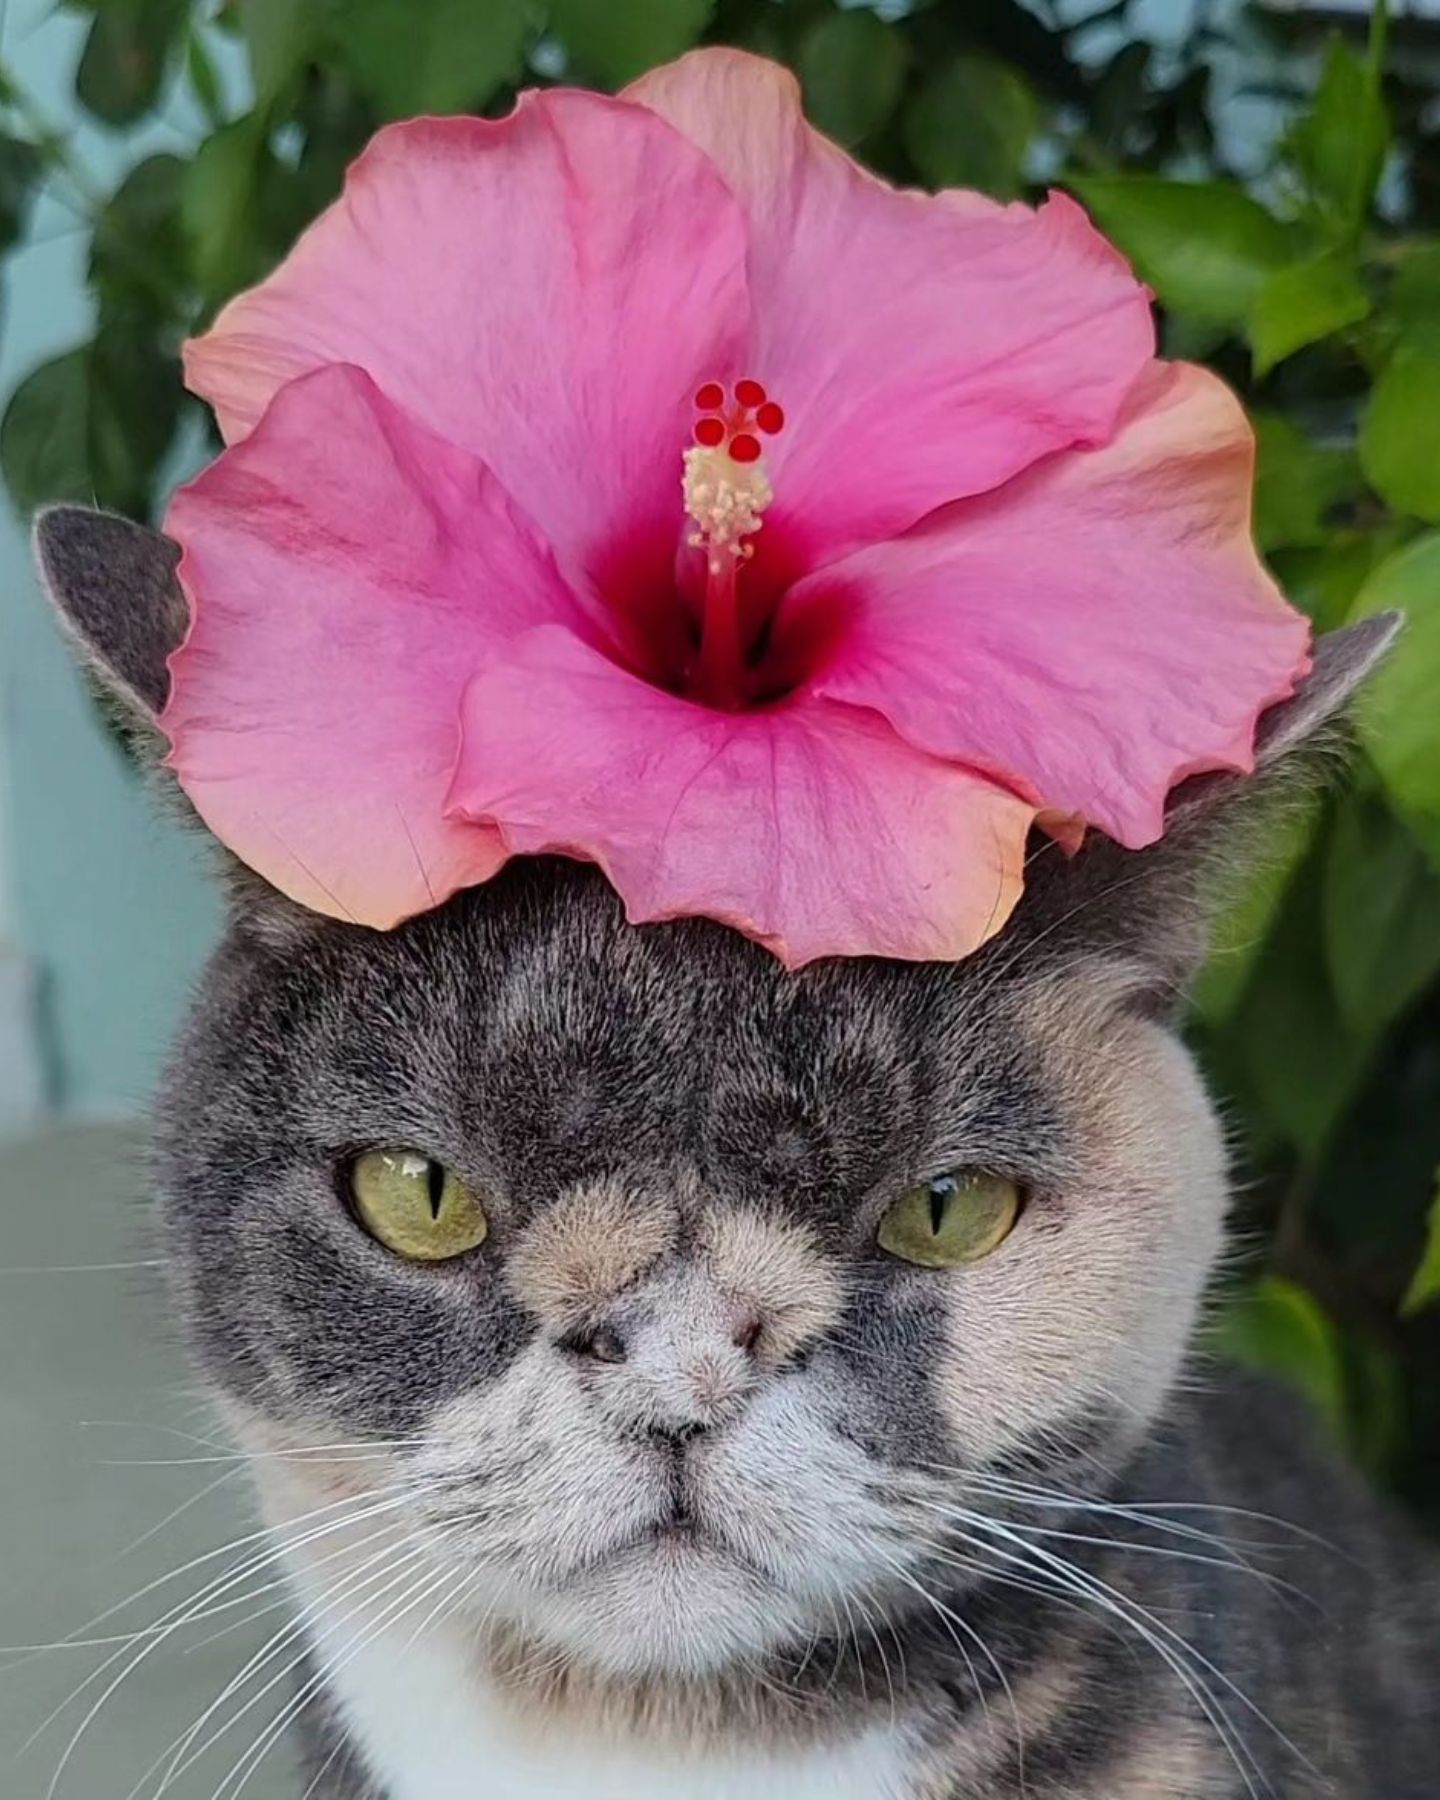 cat sitting under the flower